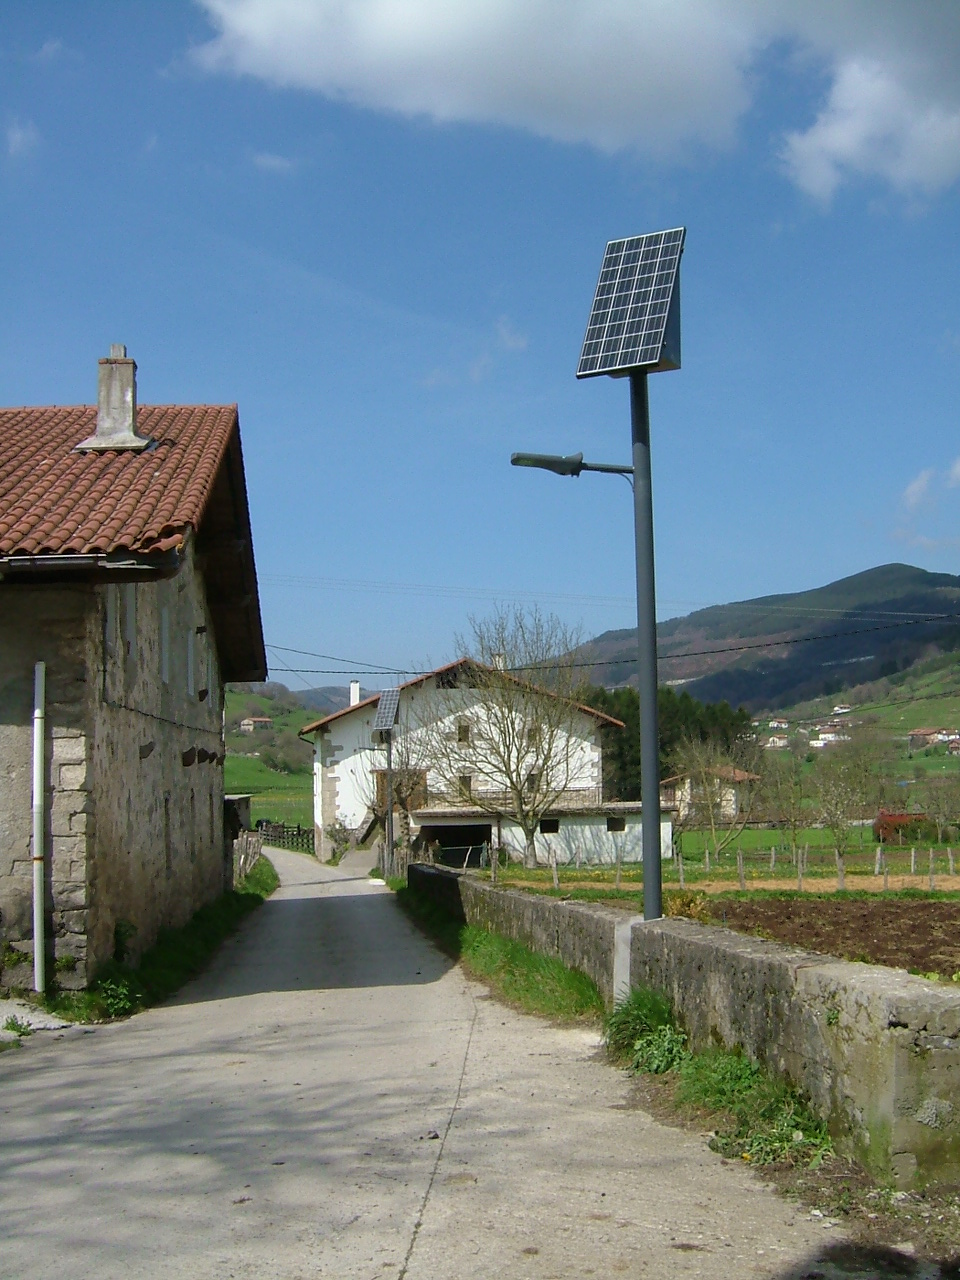 Plan energético municipal de Berastegi 2012 - 2018